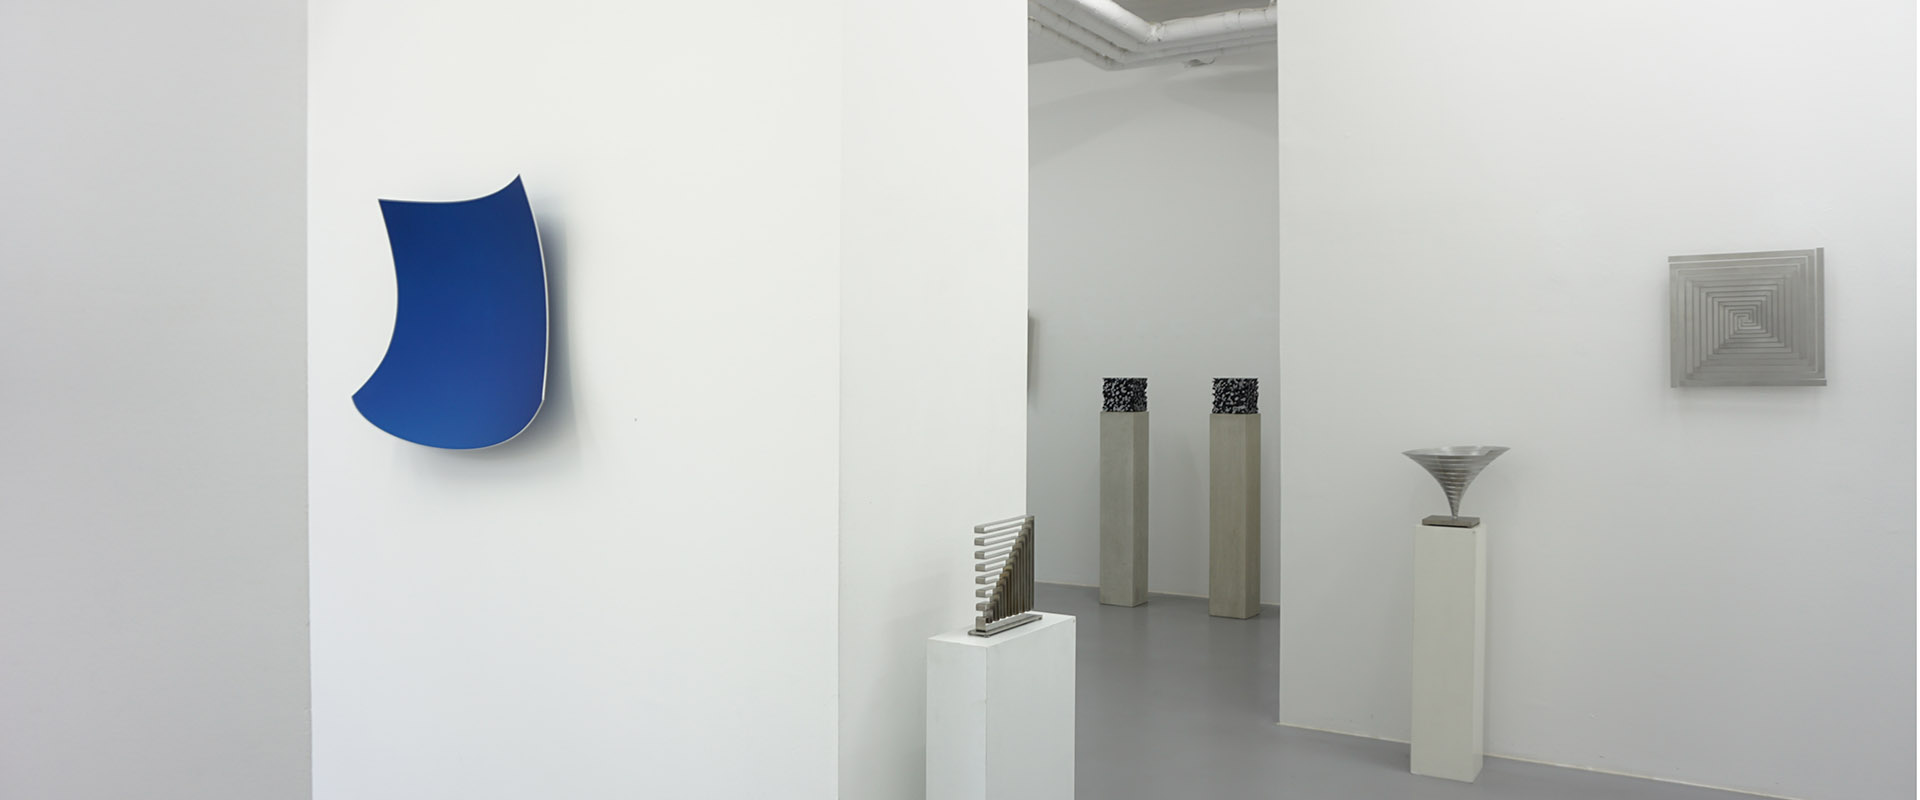 Ausstellungsansicht "Ecken und Kanten", Galerie Renate Bender 2018